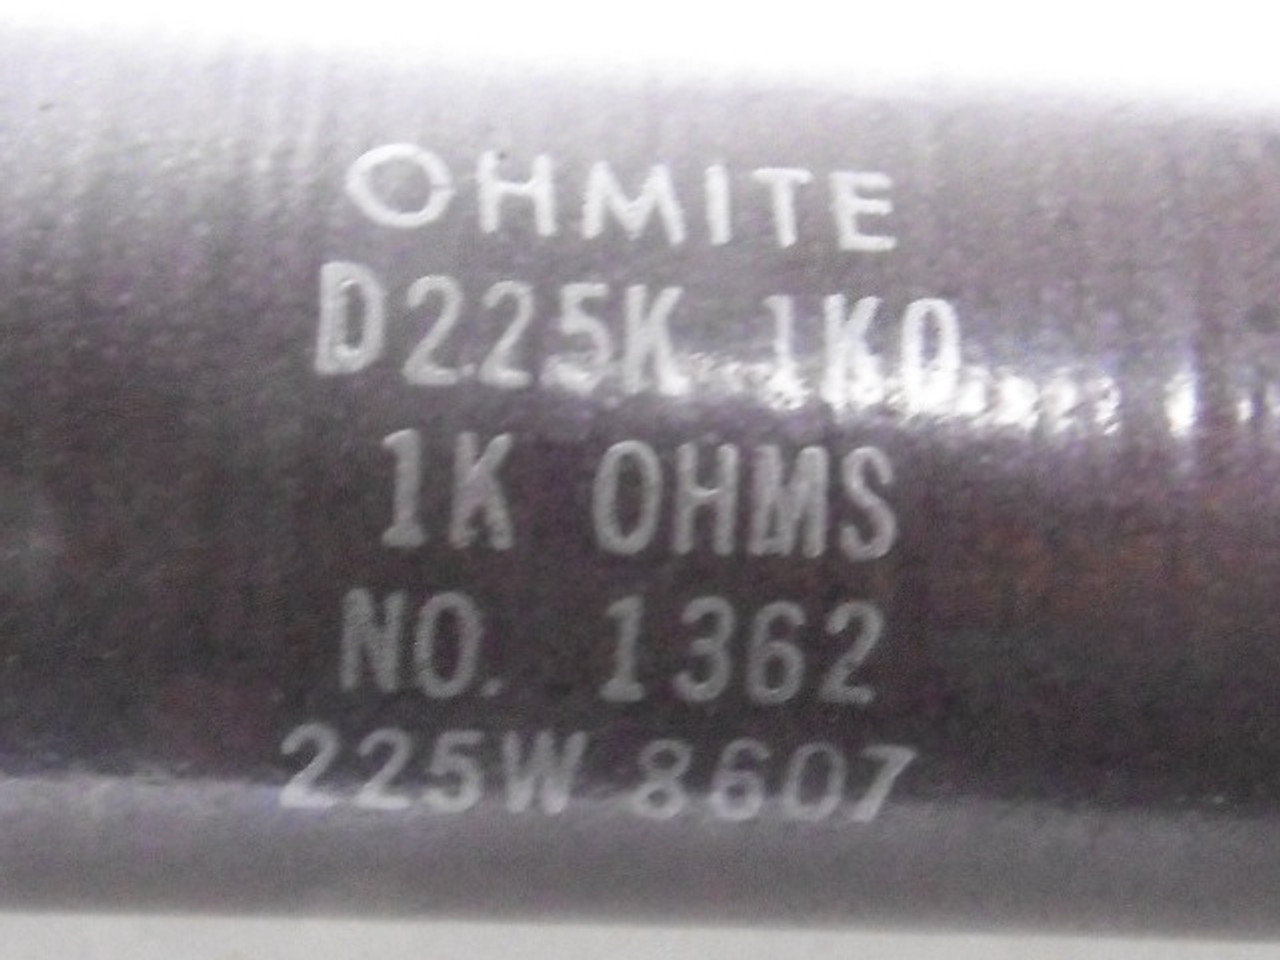 Ohmite D225K1K0 Resistor 225W 1K Ohm USED